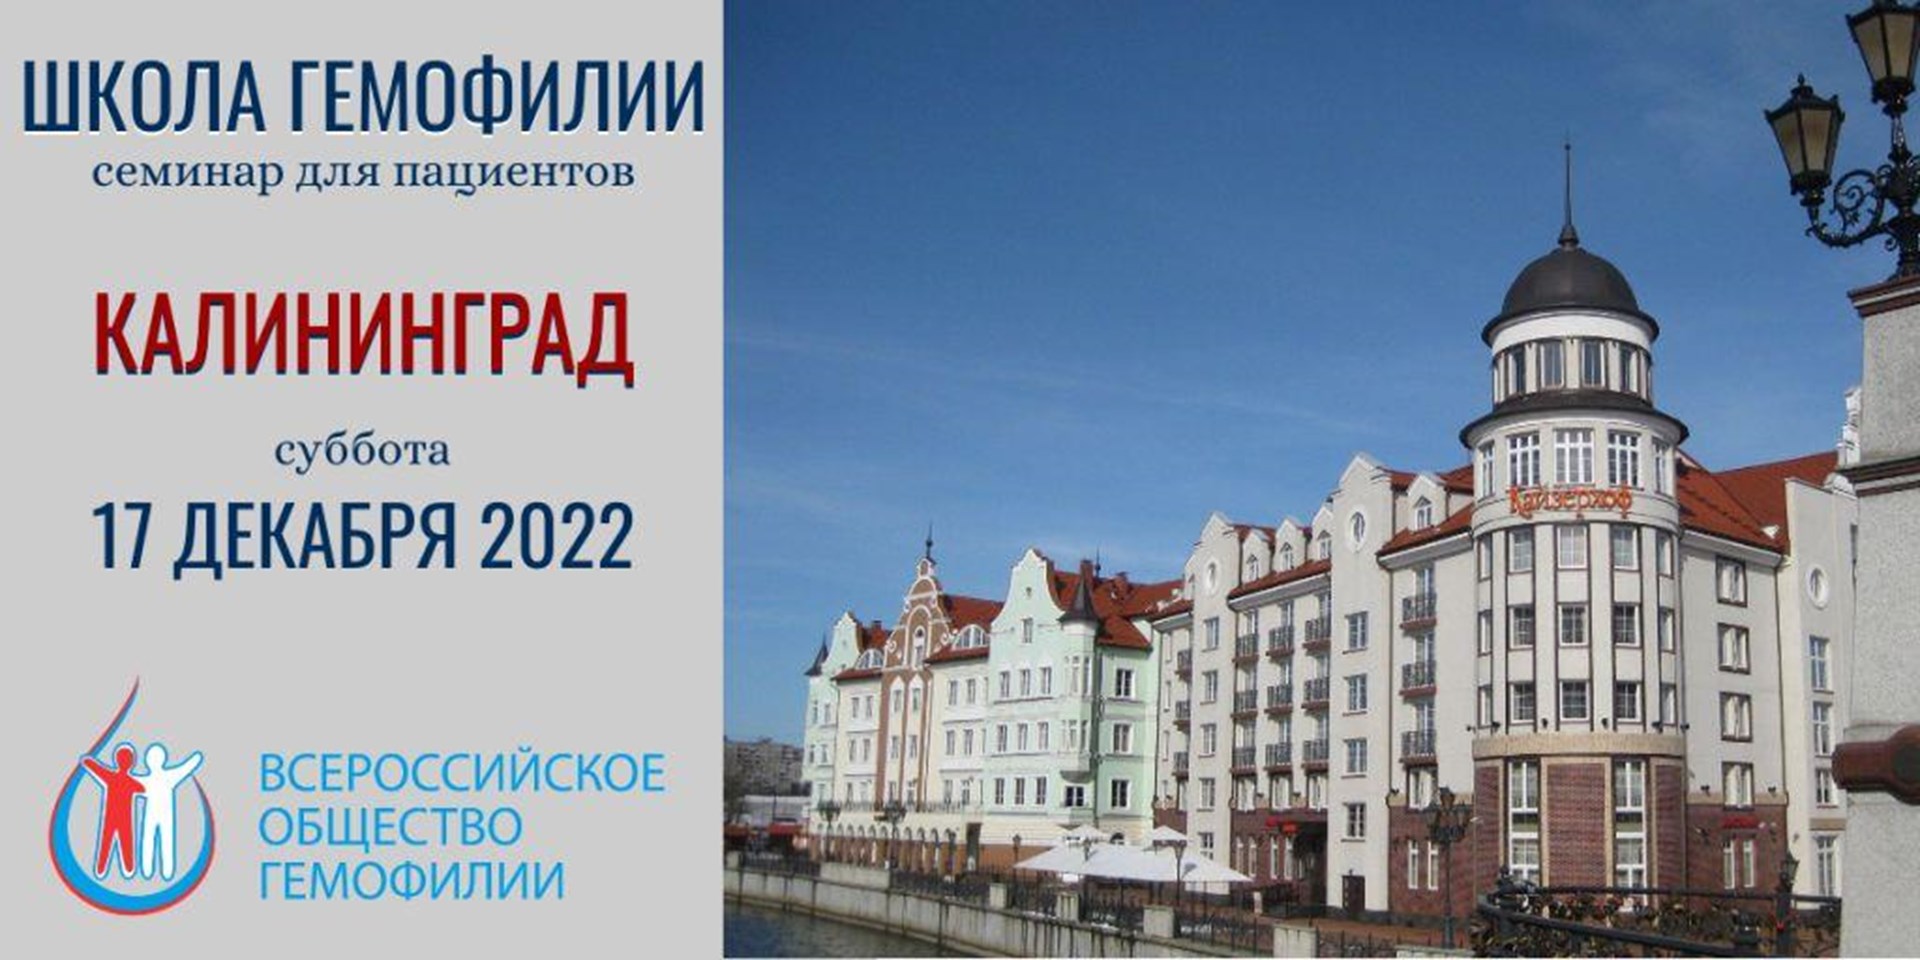 17 декабря 2022 в Калининграде состоится Школа гемофилии 